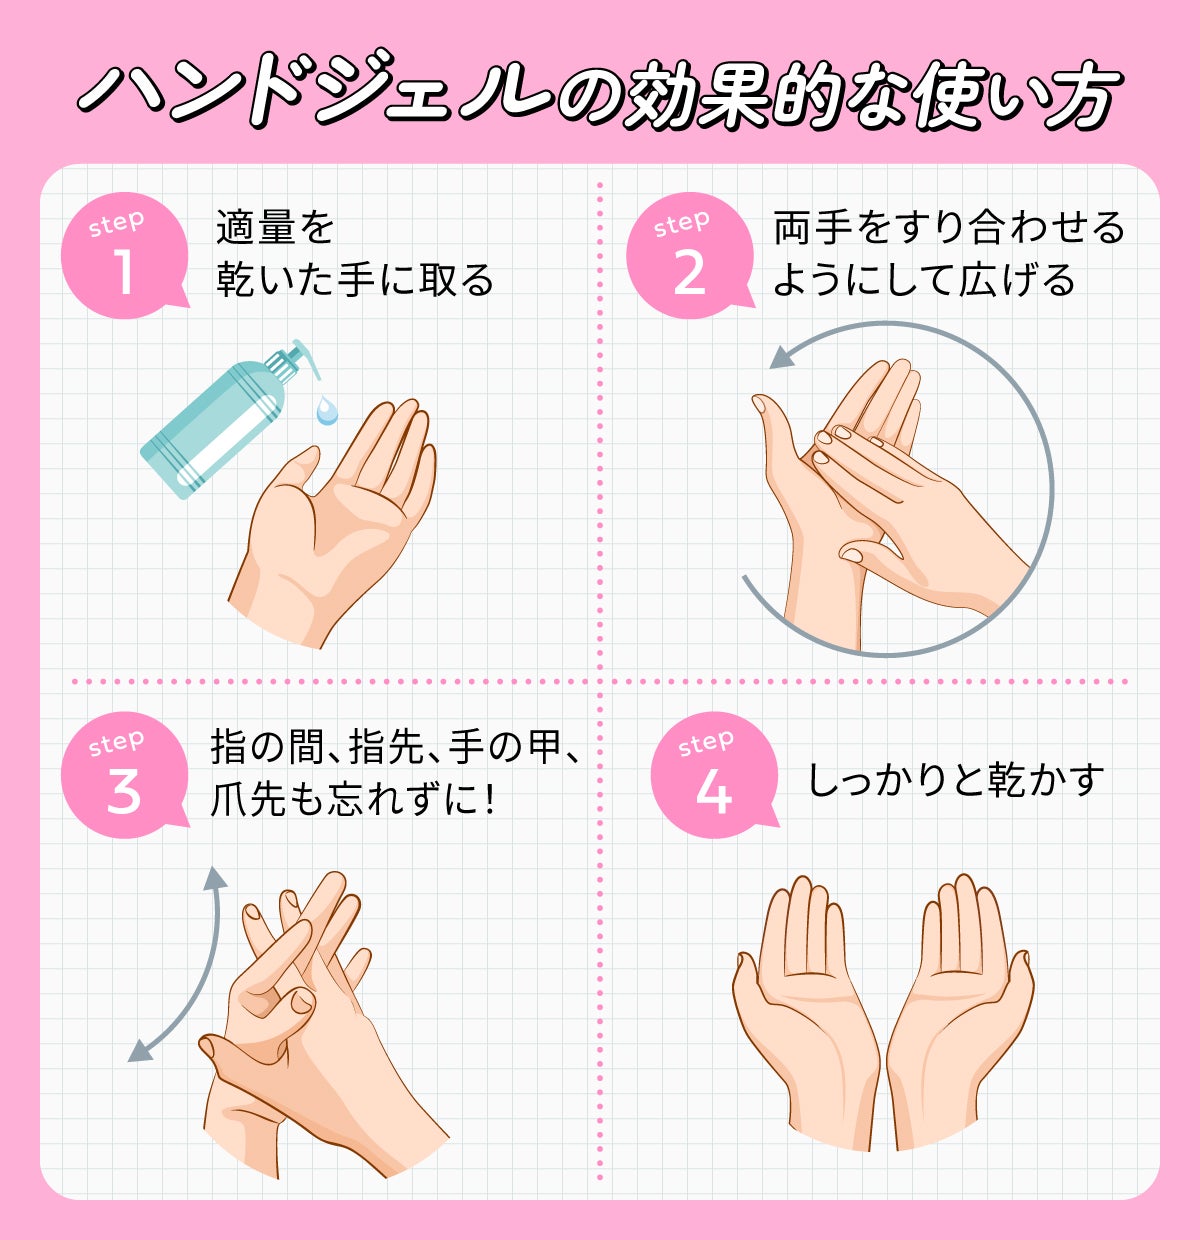 ハンドジェルの効果的な使い方。まず適量を手に取る。濡れた手につけるのはNG！次に、両手をすり合わせるようにして広げる。指の間、指先、手の甲、爪先も忘れずに！最後にしっかりと乾かす。